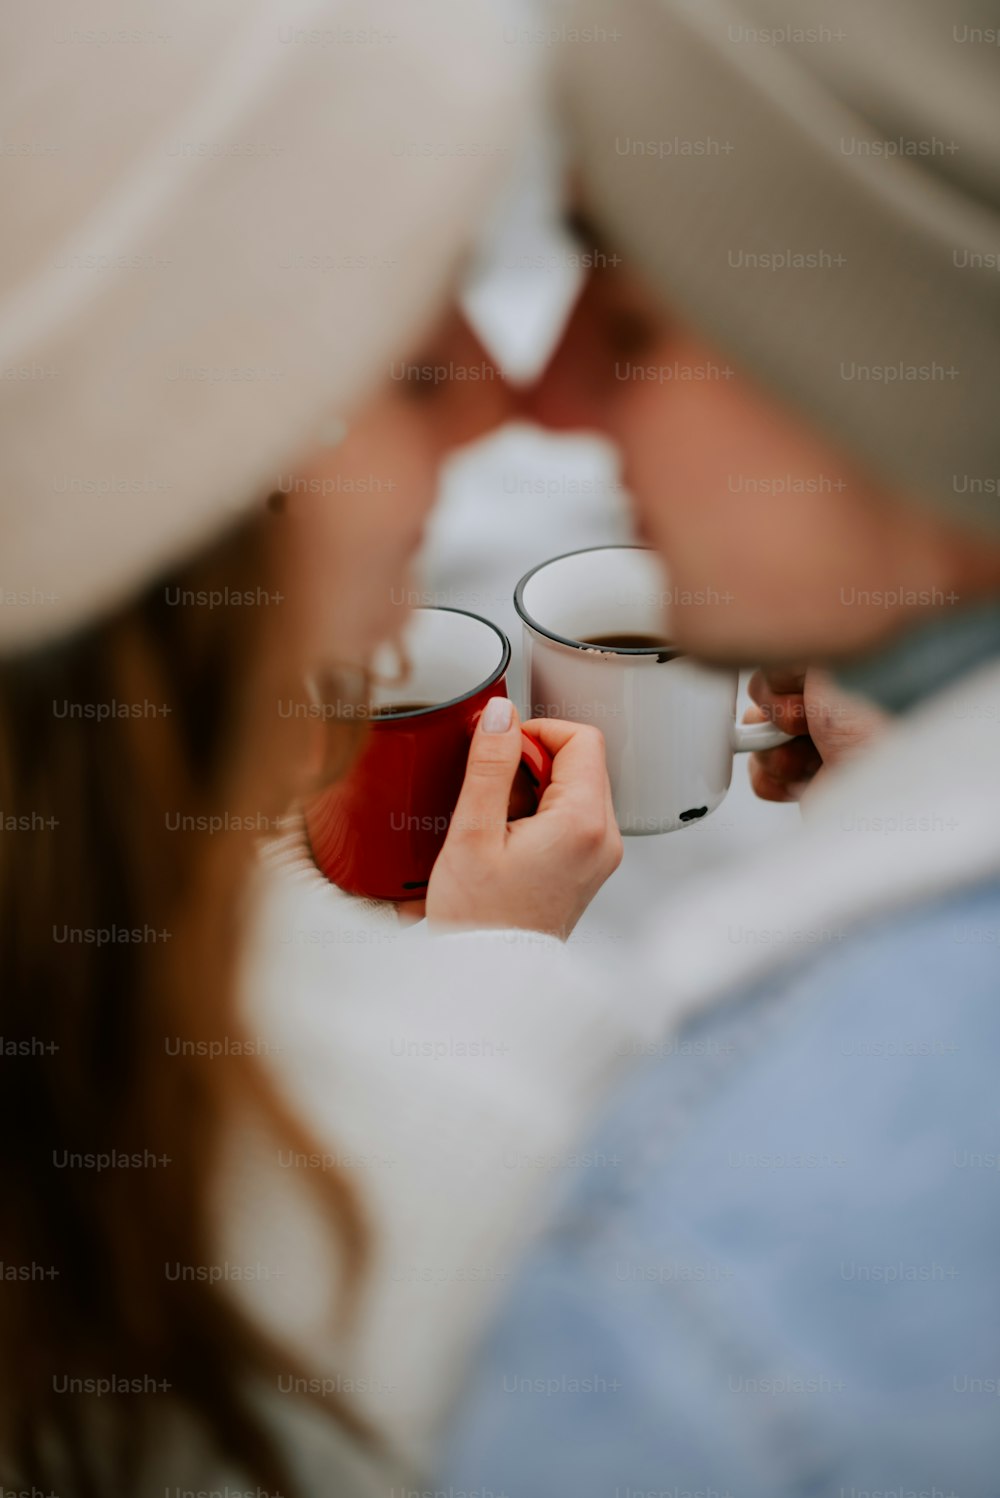 커피 잔을 들고 있는 남자와 여자